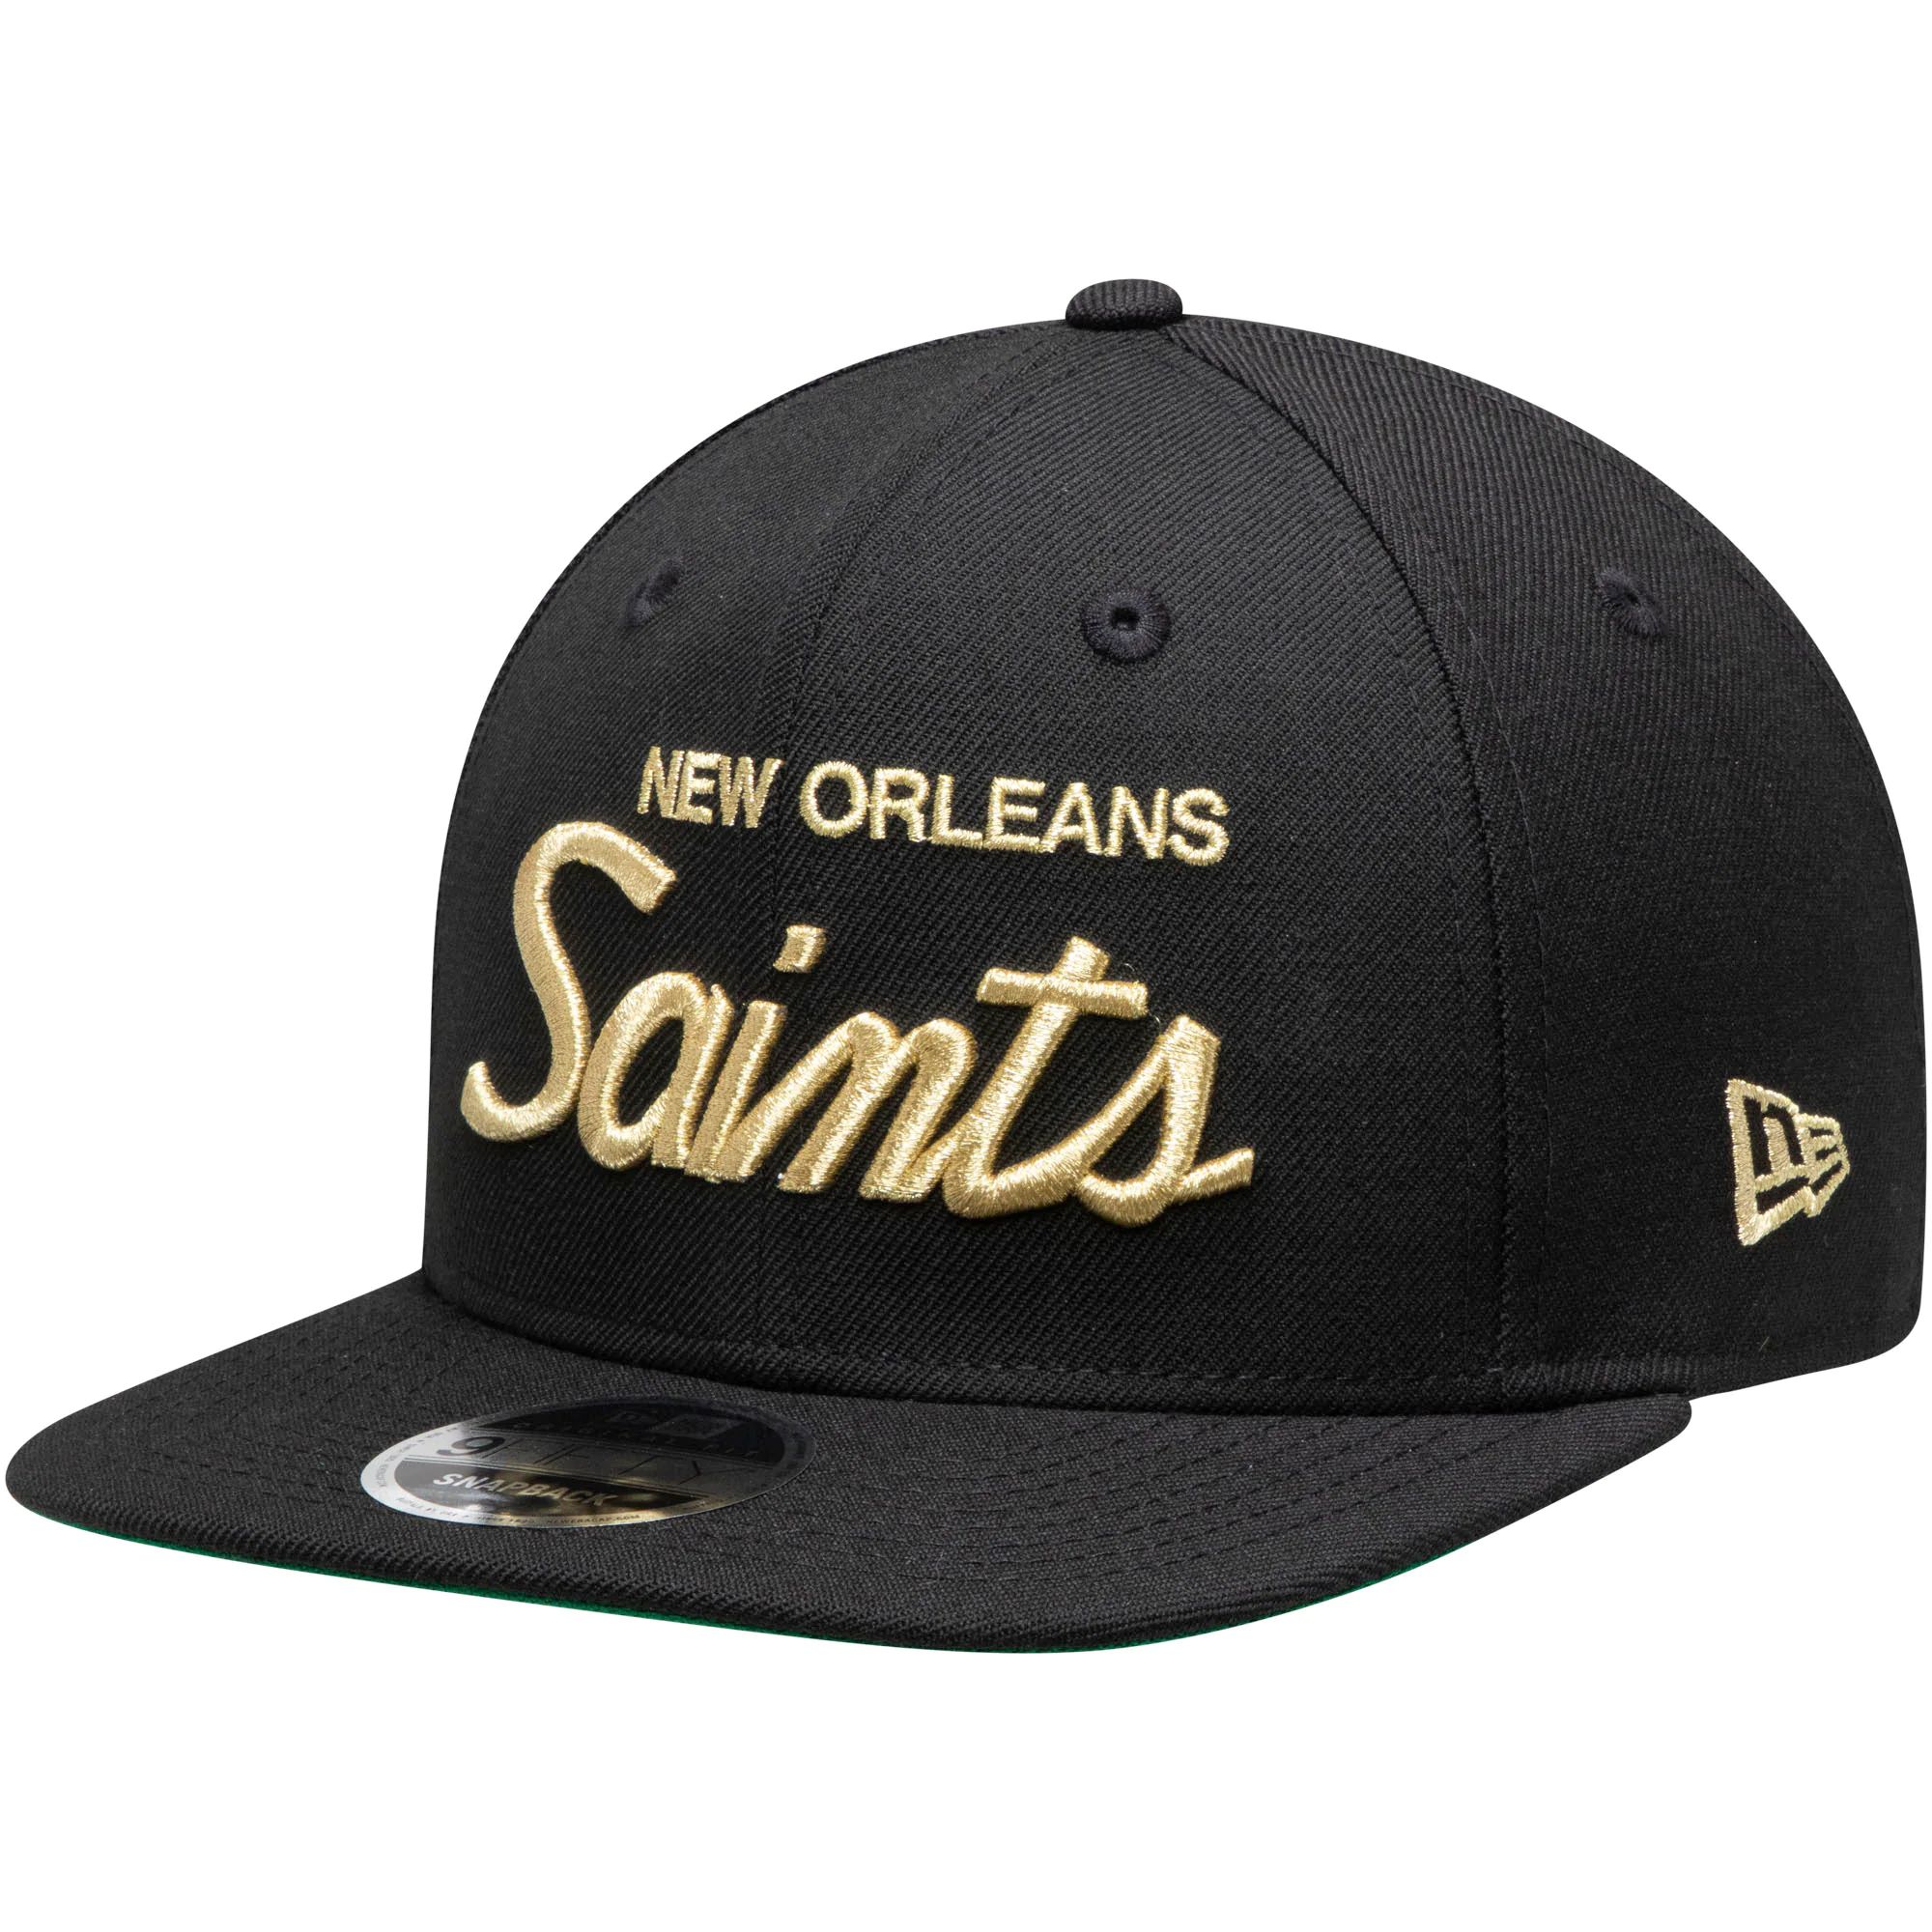 2022 NFL New Orleans Saints Hat TX 0919